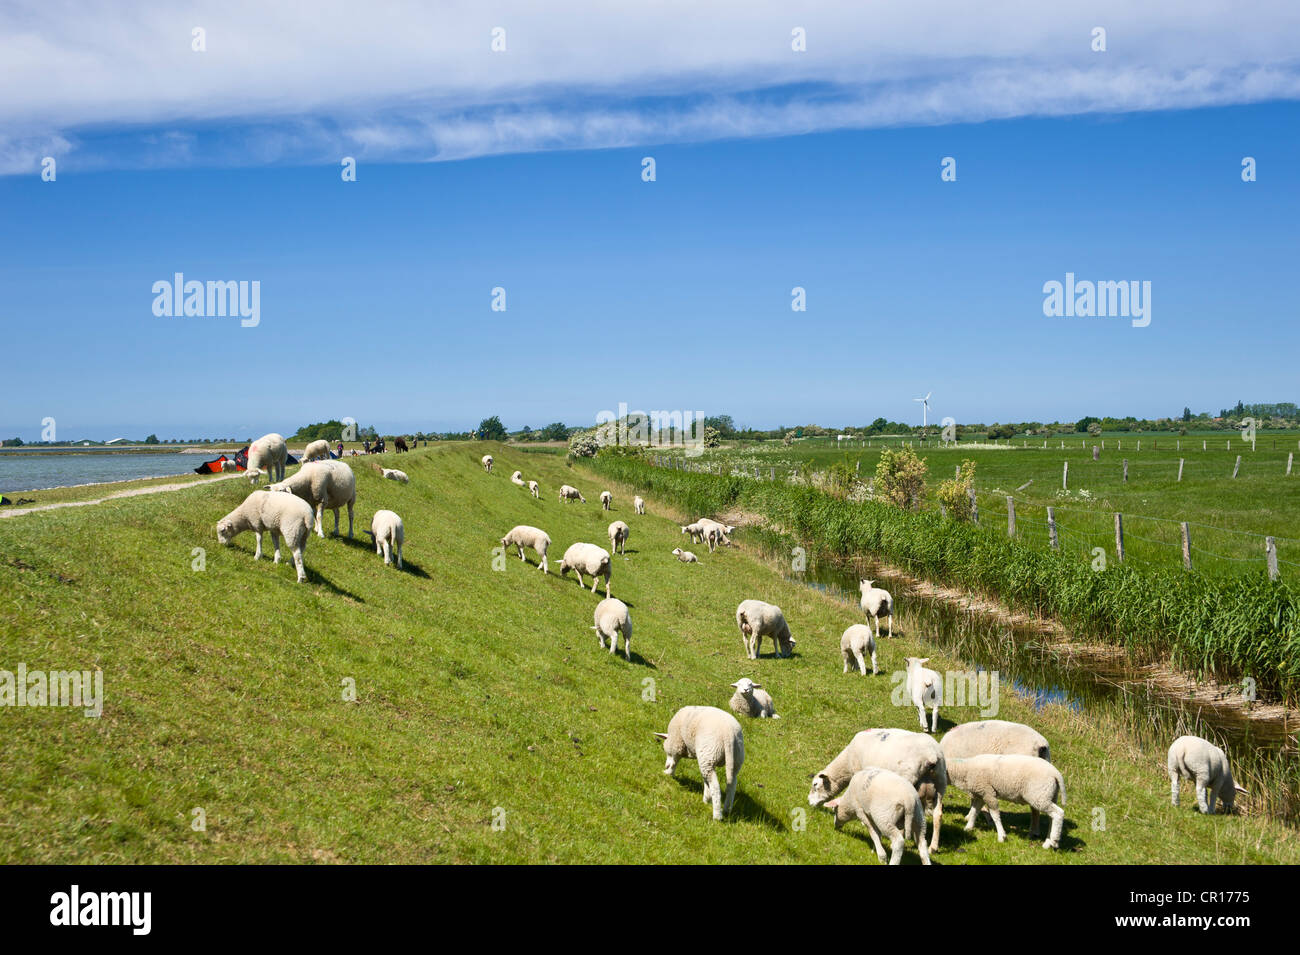 Des moutons paissant sur la digue, d'inondation, l'île de Fehmarn Lemkenhafen, mer Baltique, Schleswig-Holstein, Allemagne, Europe Banque D'Images